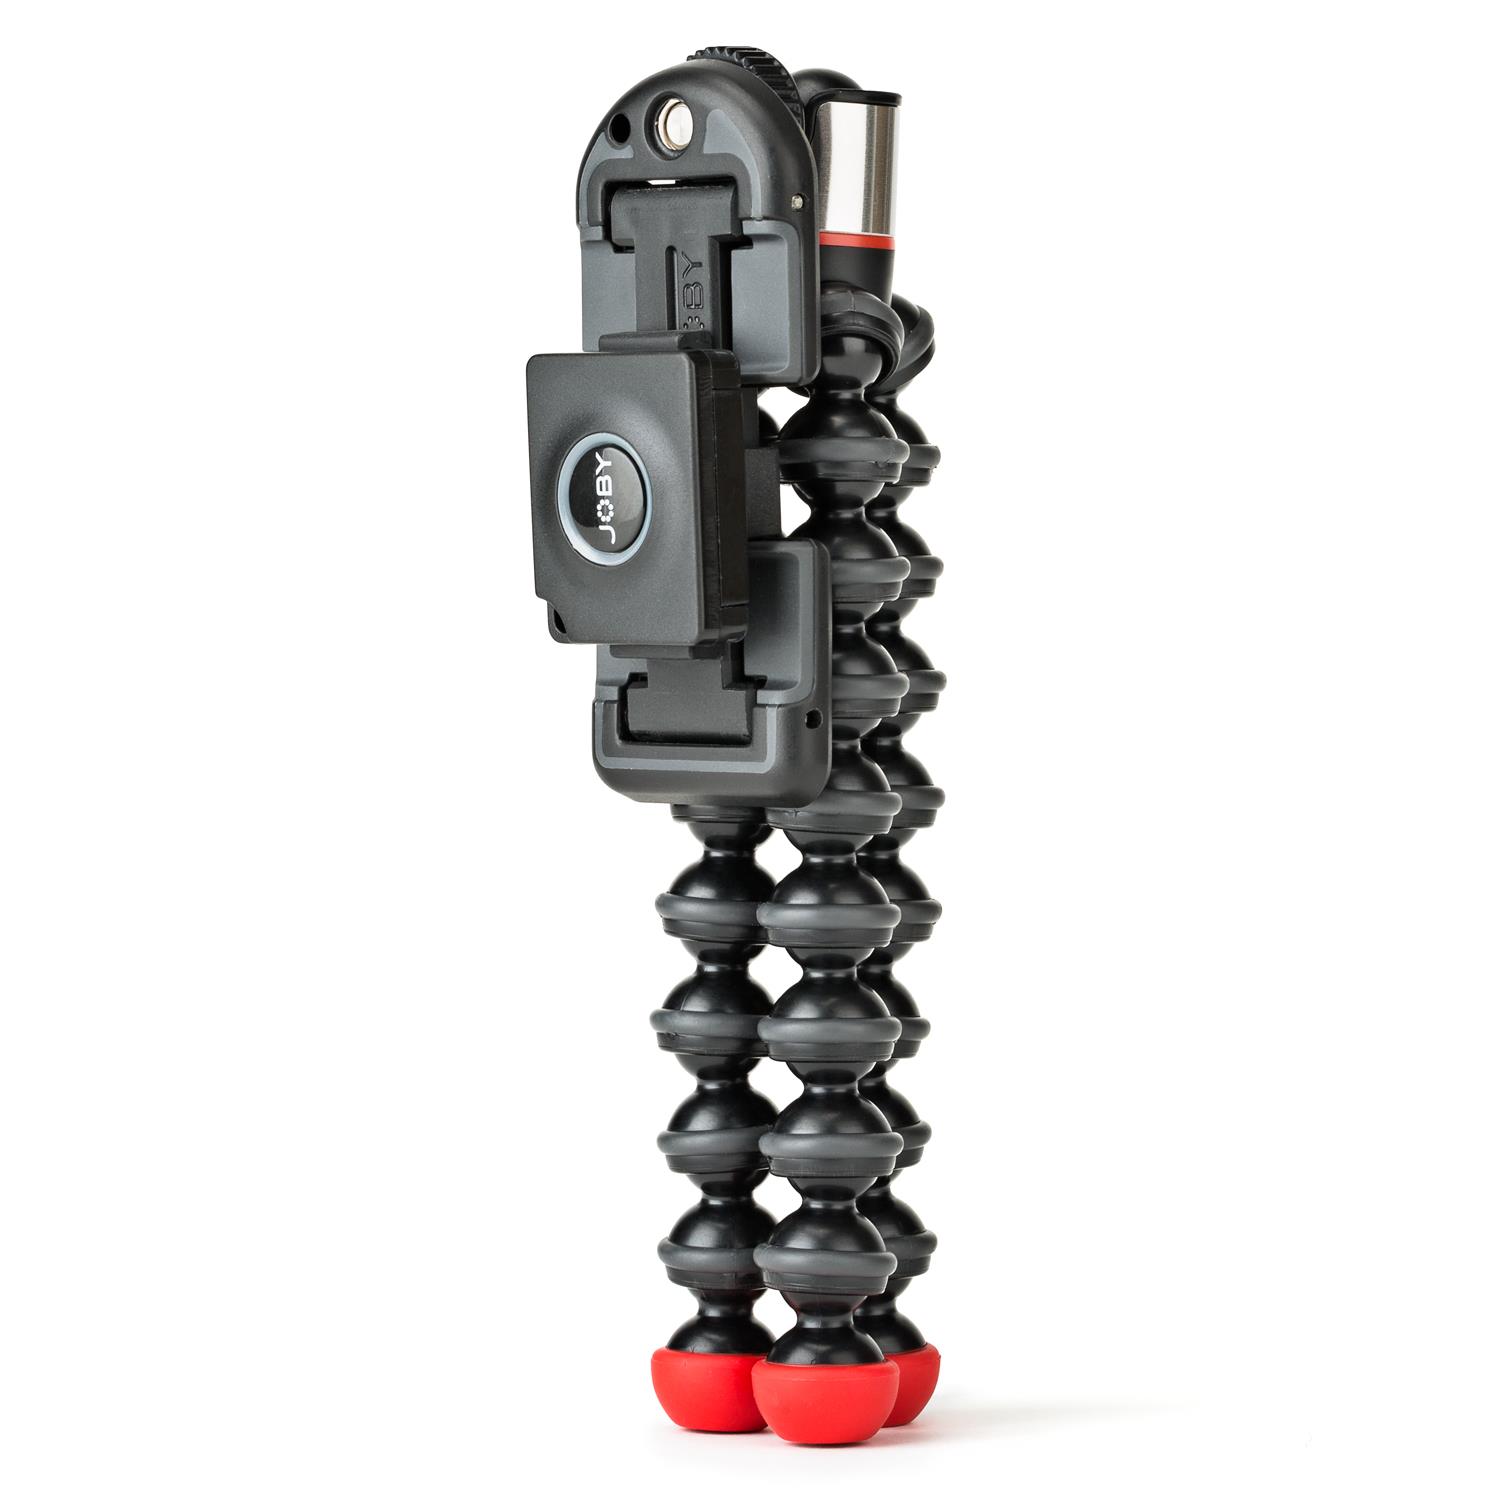 Joby GripTight ONE GP magnetisches Smartphone Stativ/Halterung - Schwarz